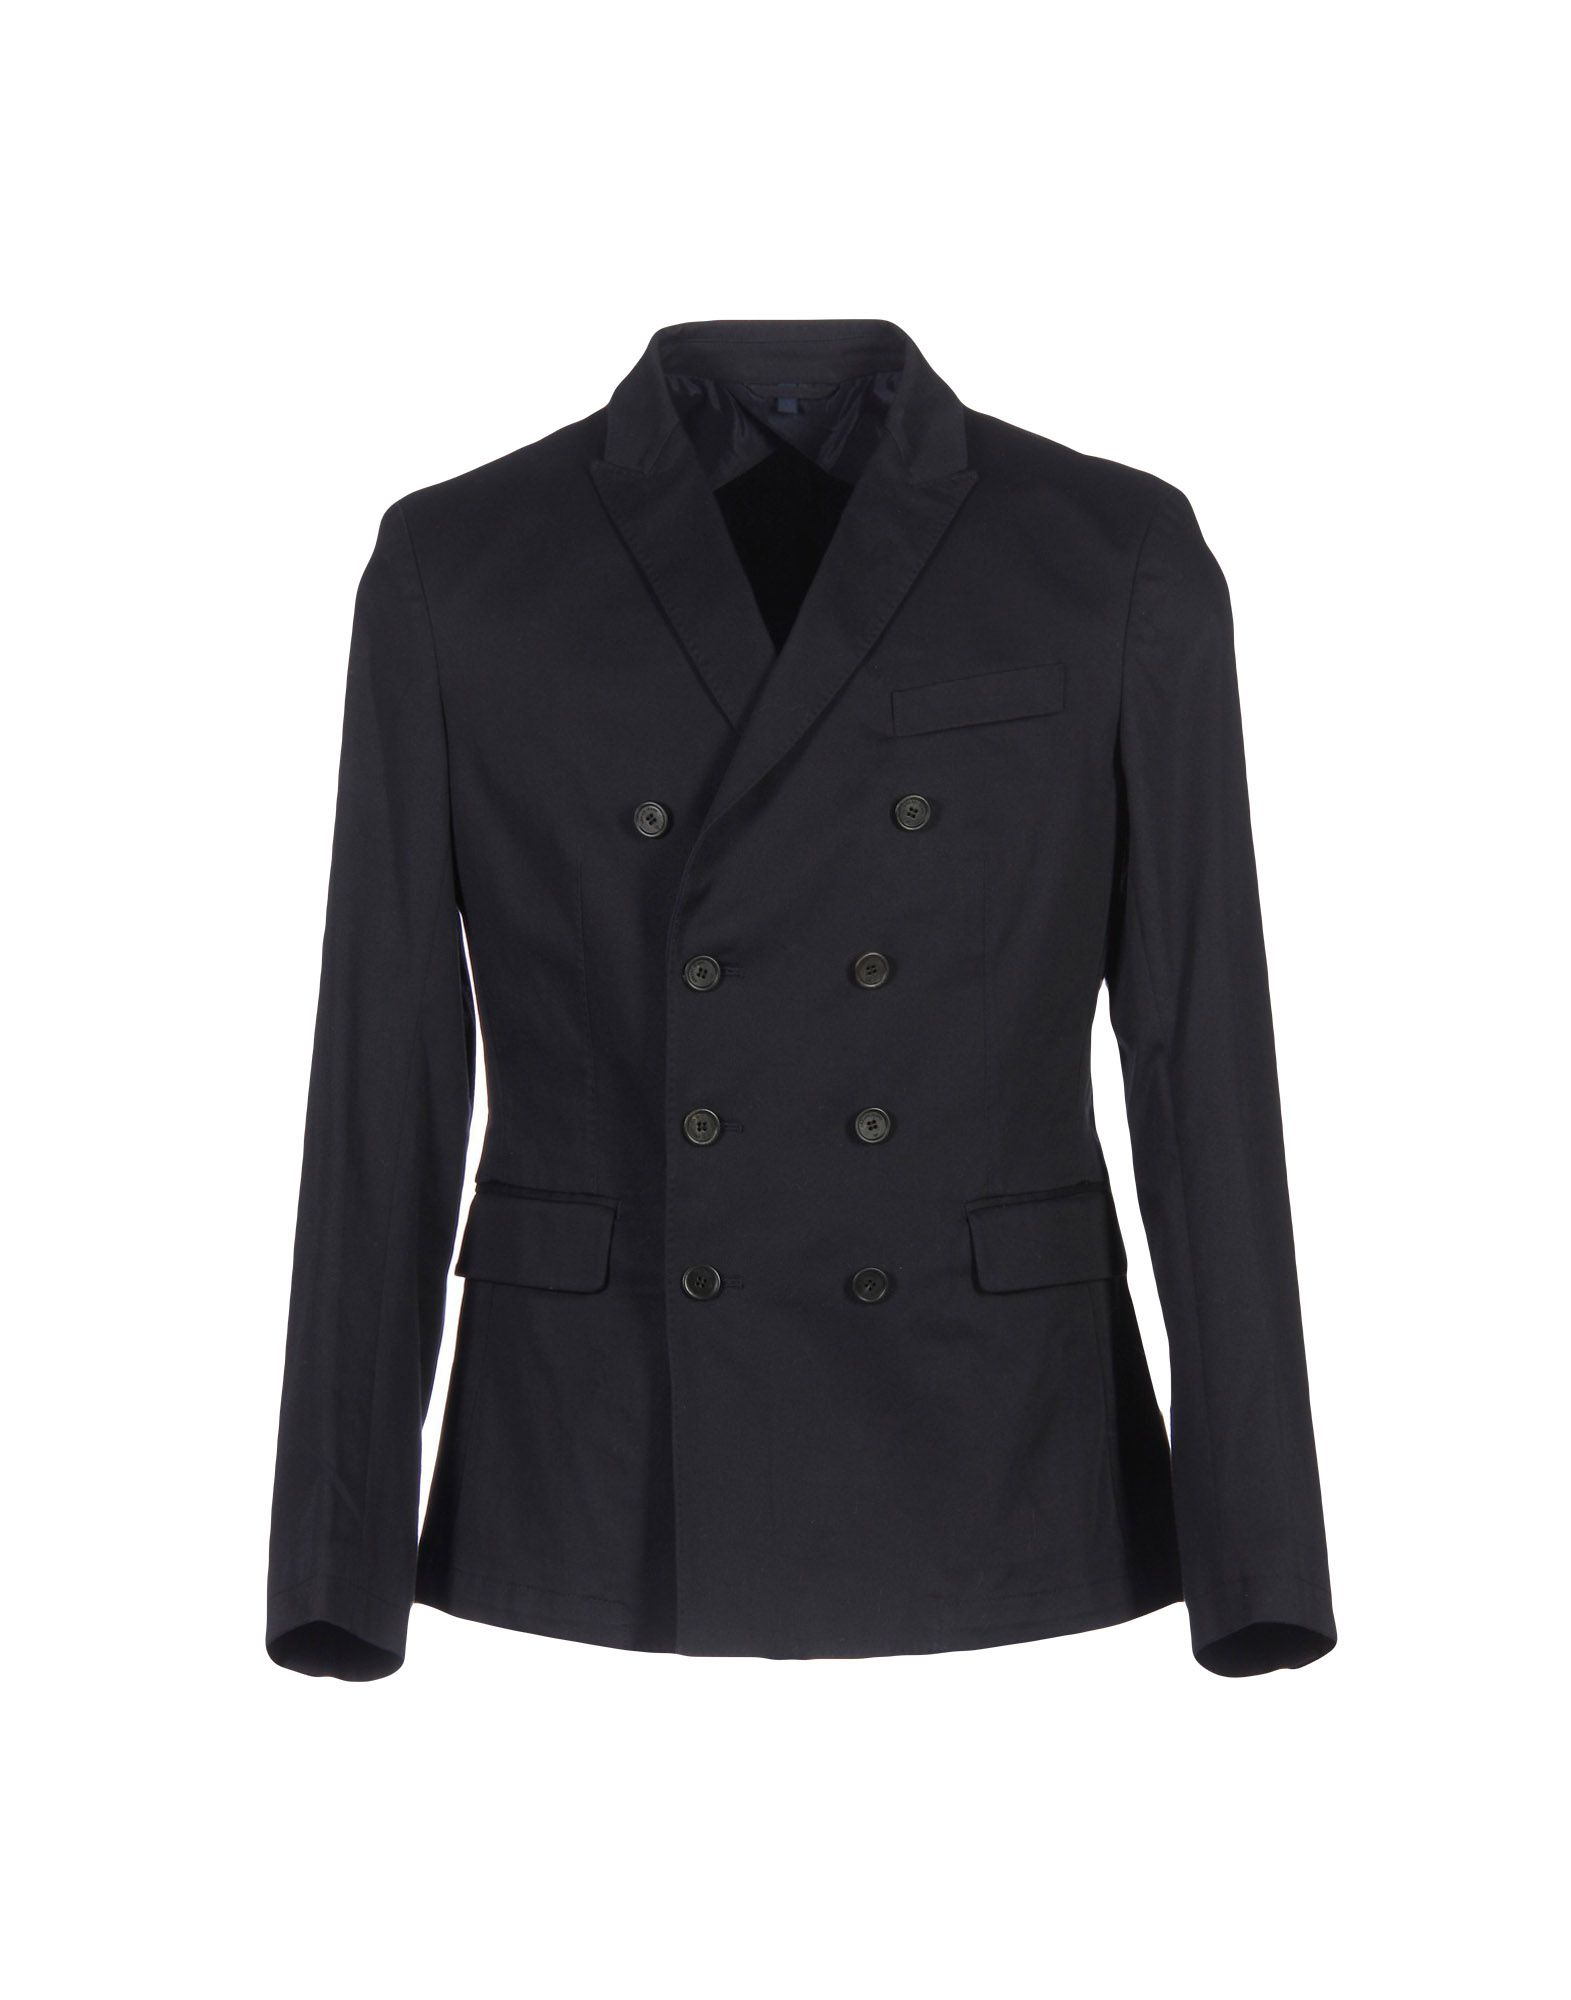 ARMANI JEANS Suit jackets - Item 49248831